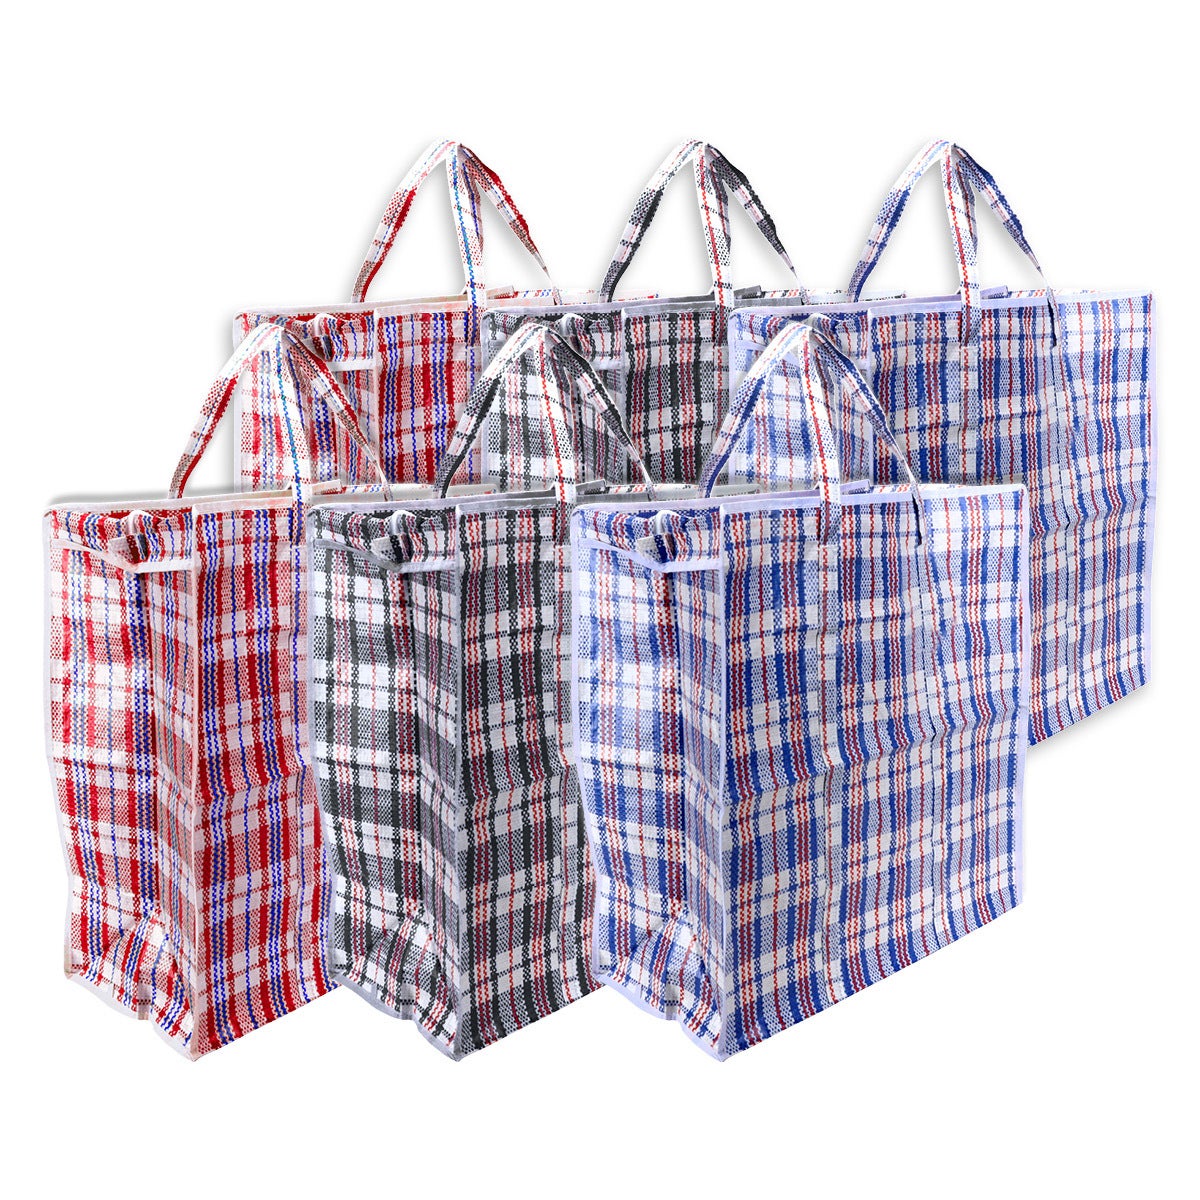 Home Master 6PK Shopping Bags Zip Top Strong Durable Tartan Design 53 x 49cm